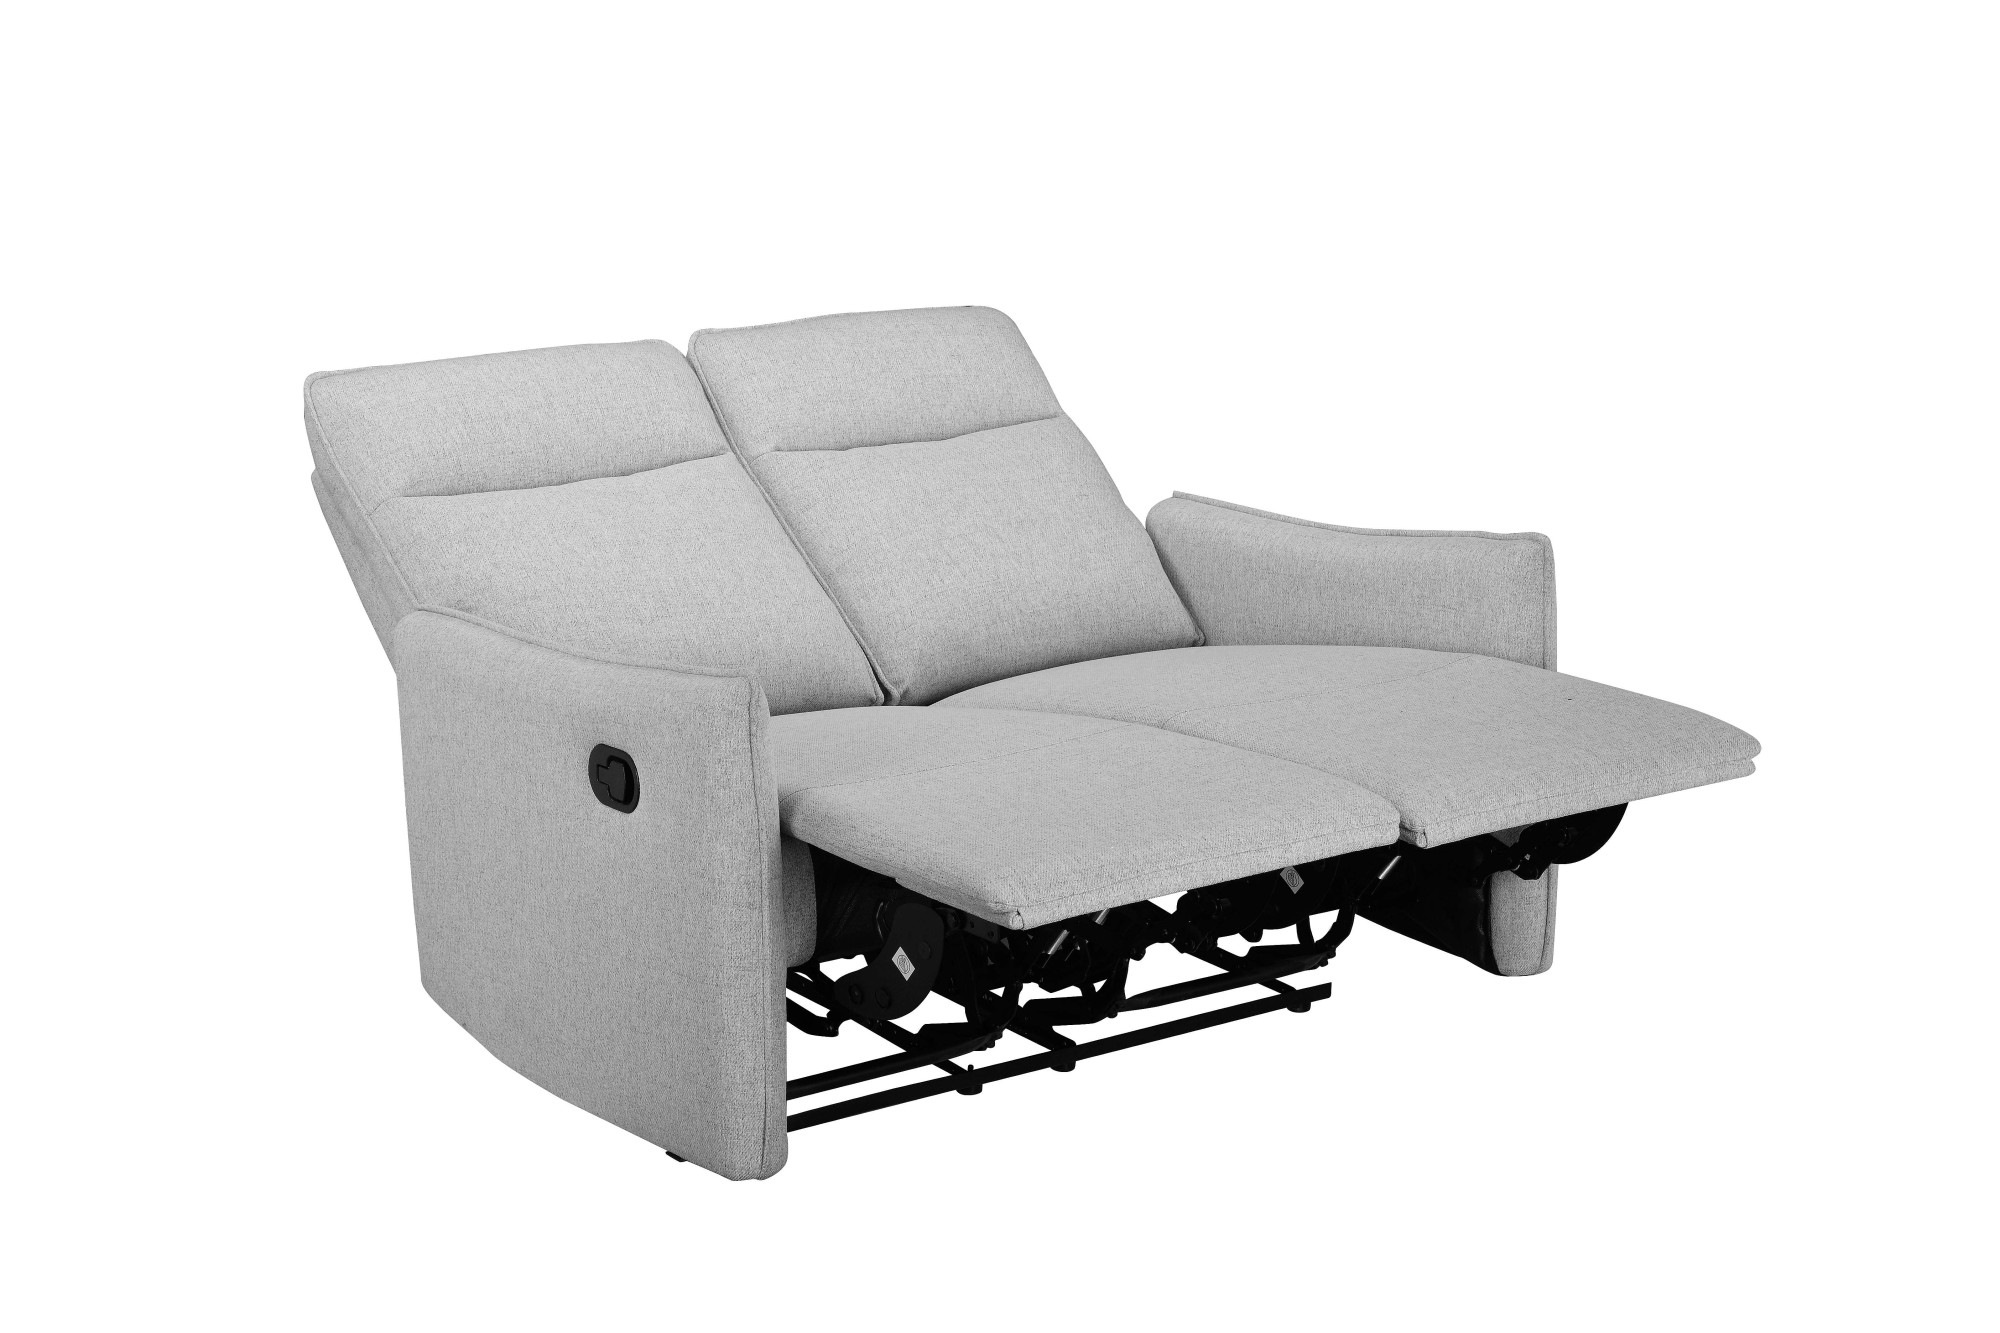 Dorel Home 2-Sitzer »Lugo, Kinosofa mit Reclinerfunktion in Kunstleder und Webstoff«, mit manueller Relaxfunktion in beiden Sitzen